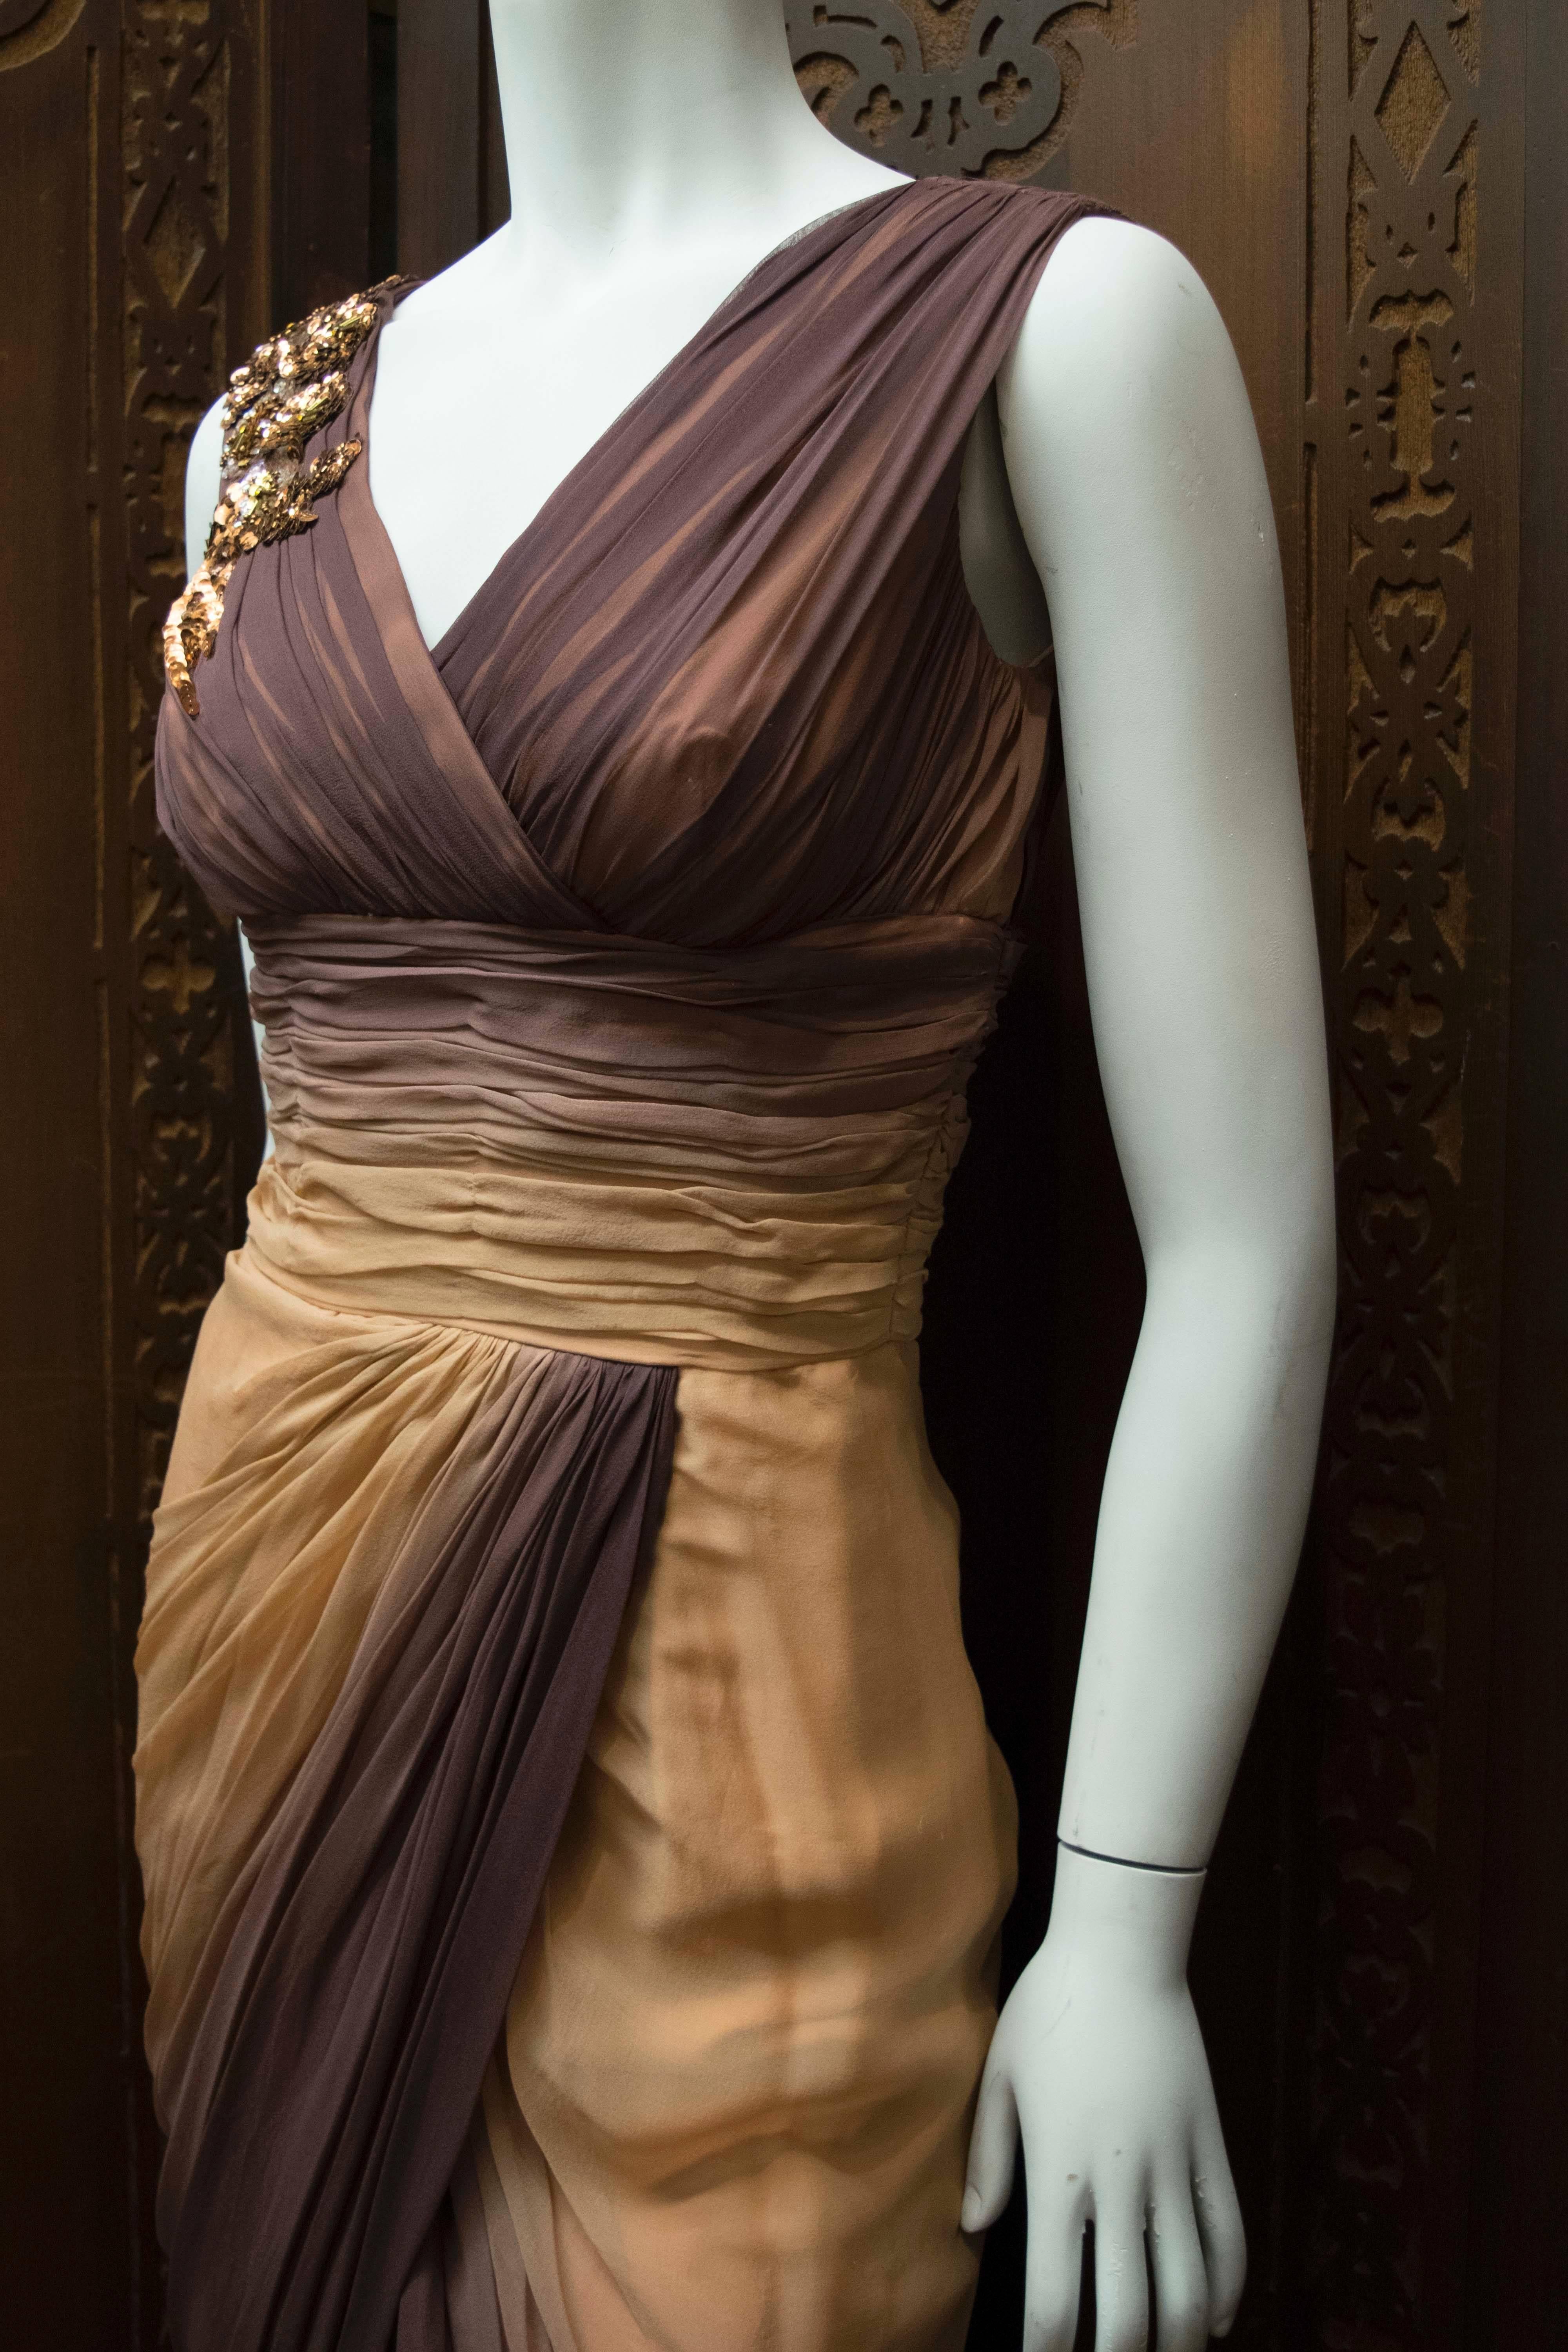 Robe de soirée Ombre des années 1950.

Une superbe robe de soirée en mousseline de soie ombragée, au corsage et à la jupe magnifiquement drapés. C'est une pièce merveilleusement flatteuse à porter, avec une superbe silhouette des années 50.

B